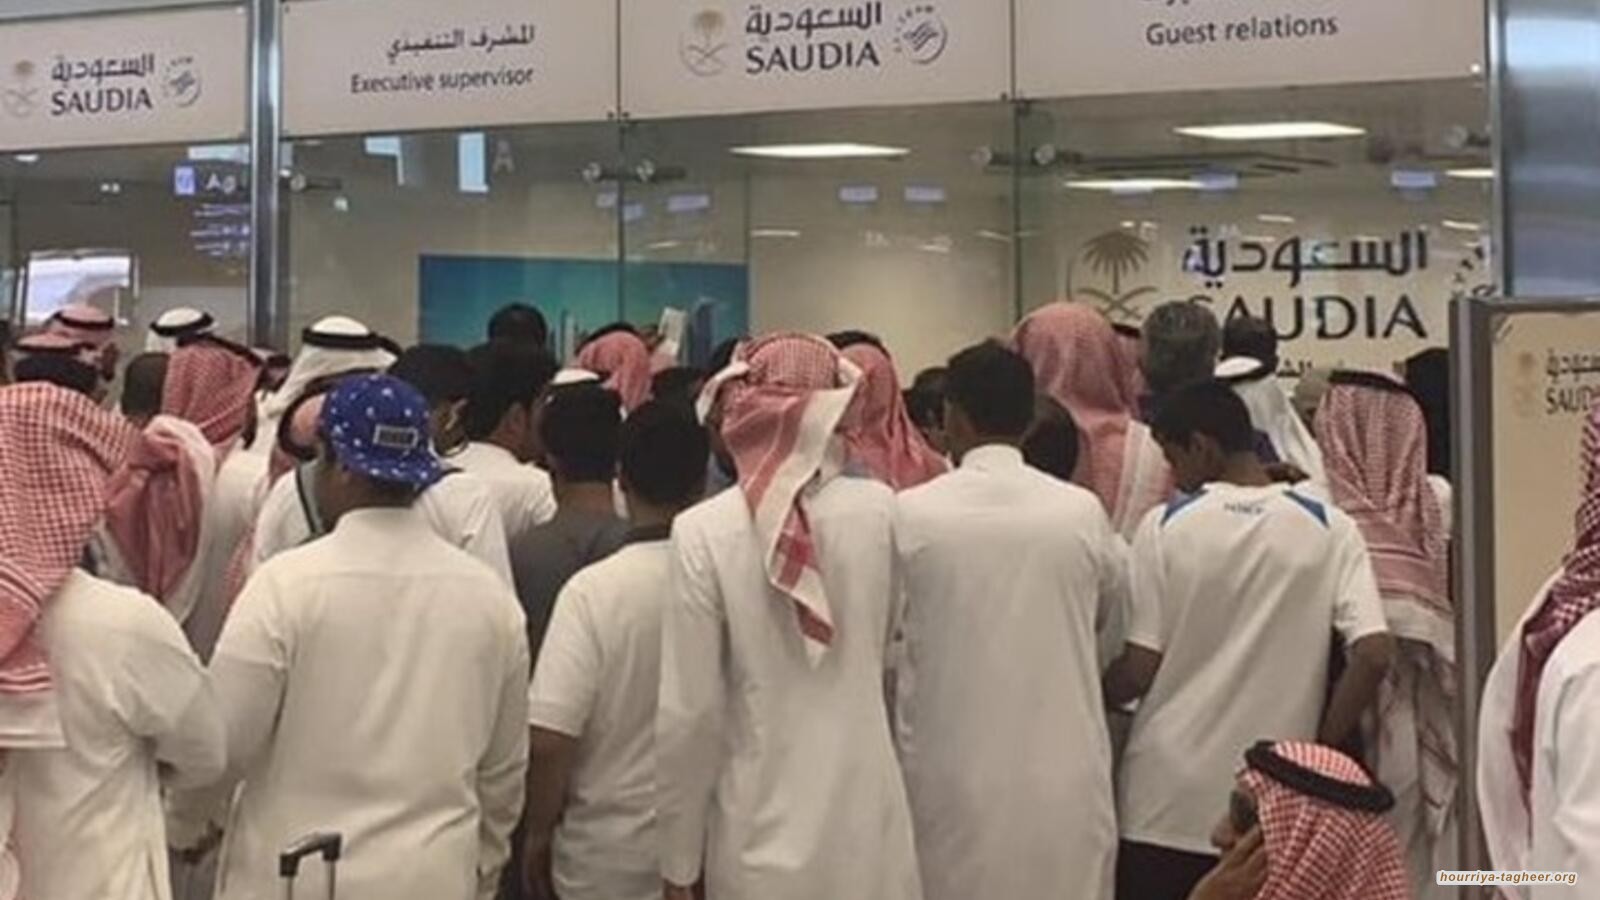 تكدس الركاب في مطارات السعودية وإلغاء الرحلات يثير غضبا